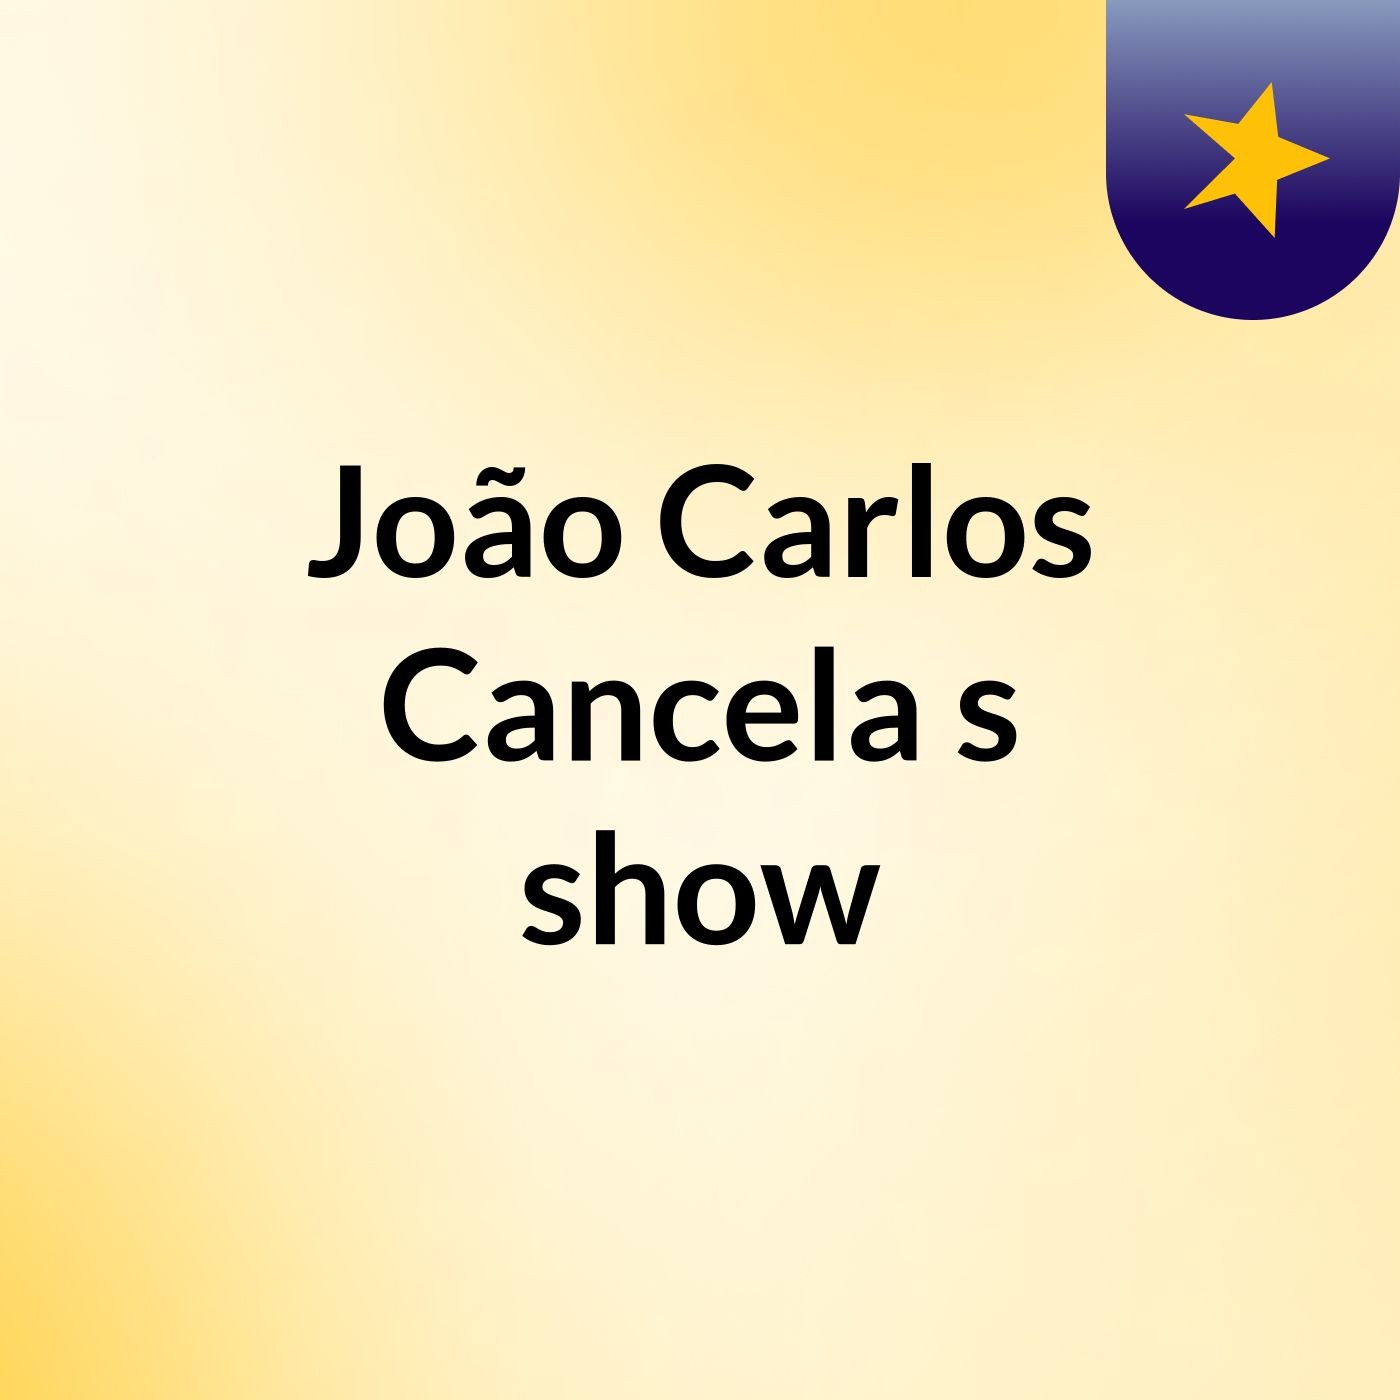 João Carlos Cancela's show